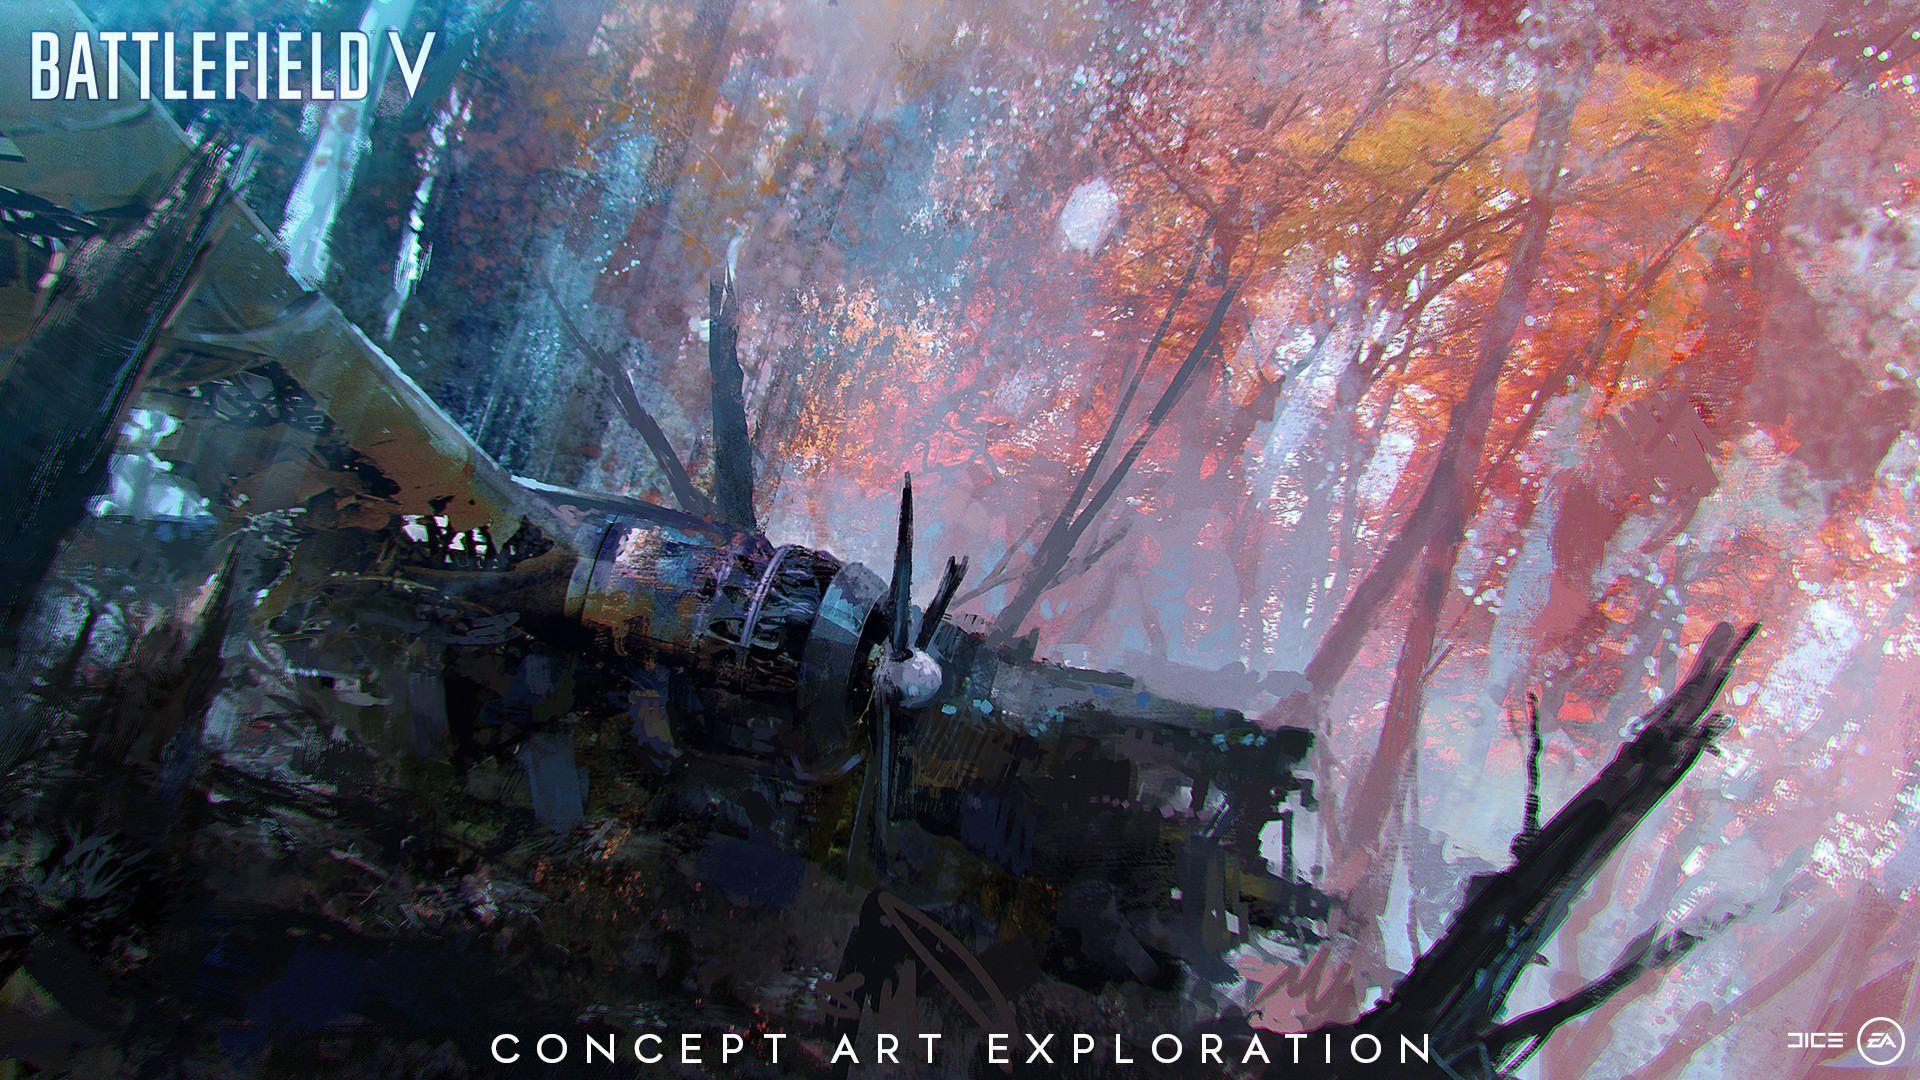 Download 1920x1200 wallpaper wreck, aircraft, battlefield concept